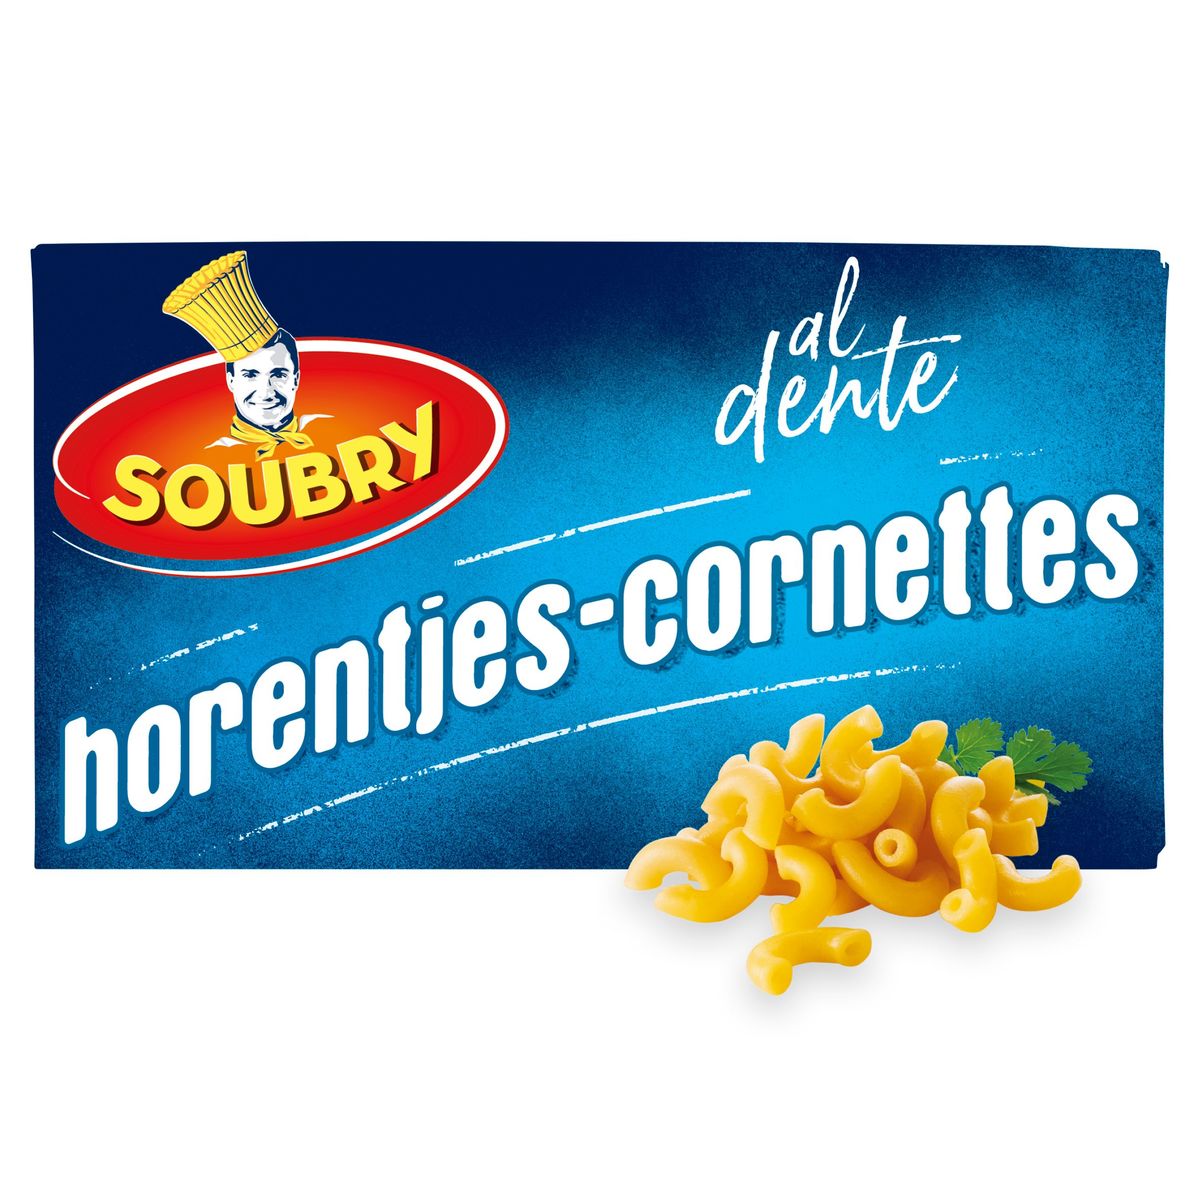 Soubry Pasta Horentjes 375g